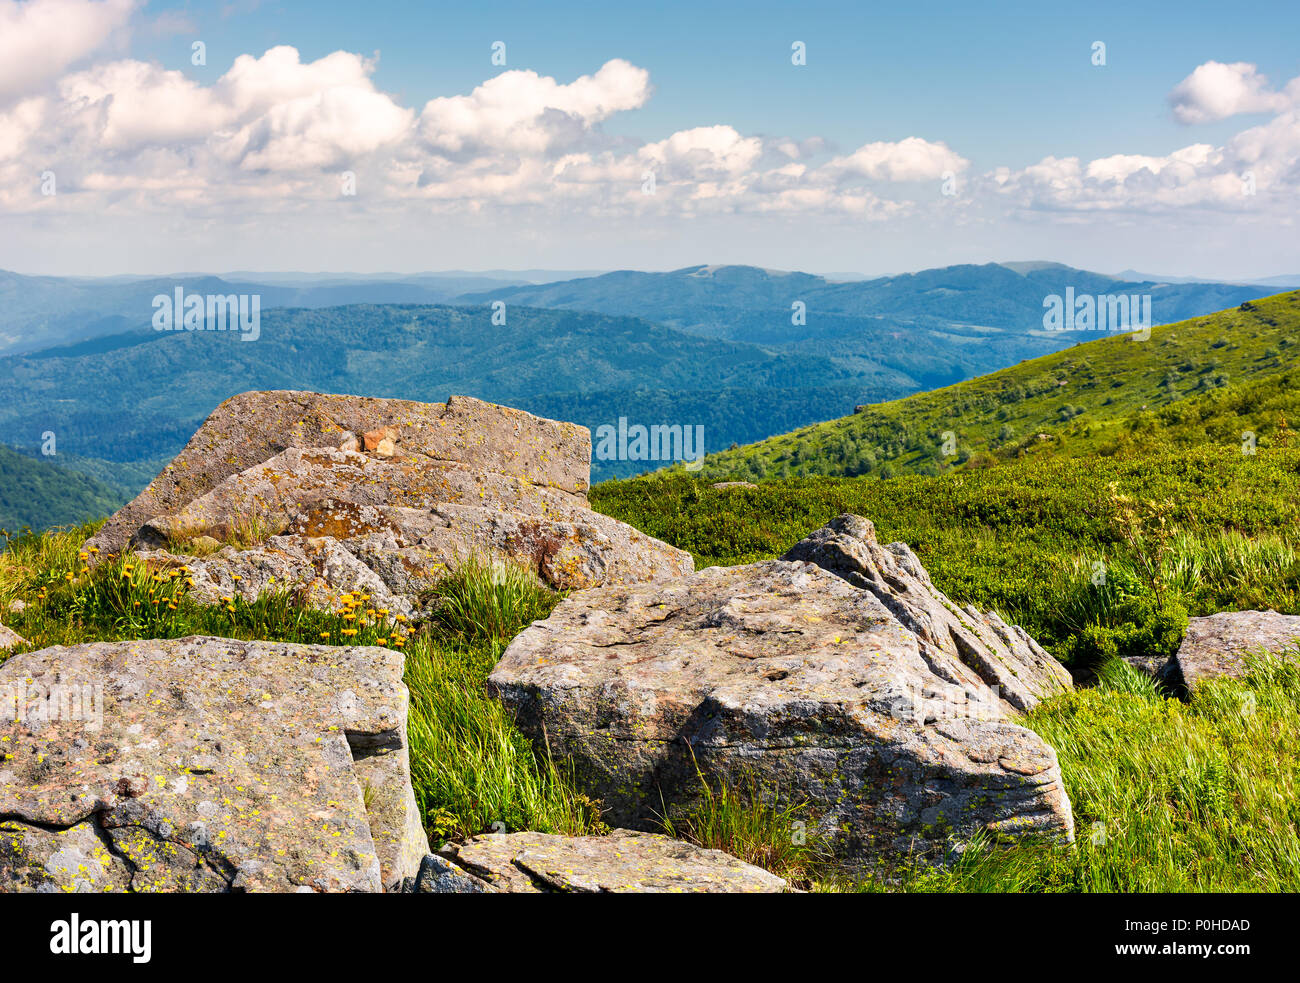 Rocce sul bordo di un pendio erboso. gialla di tarassaco tra le rocce. bellissimo paesaggio naturale in montagna Foto Stock